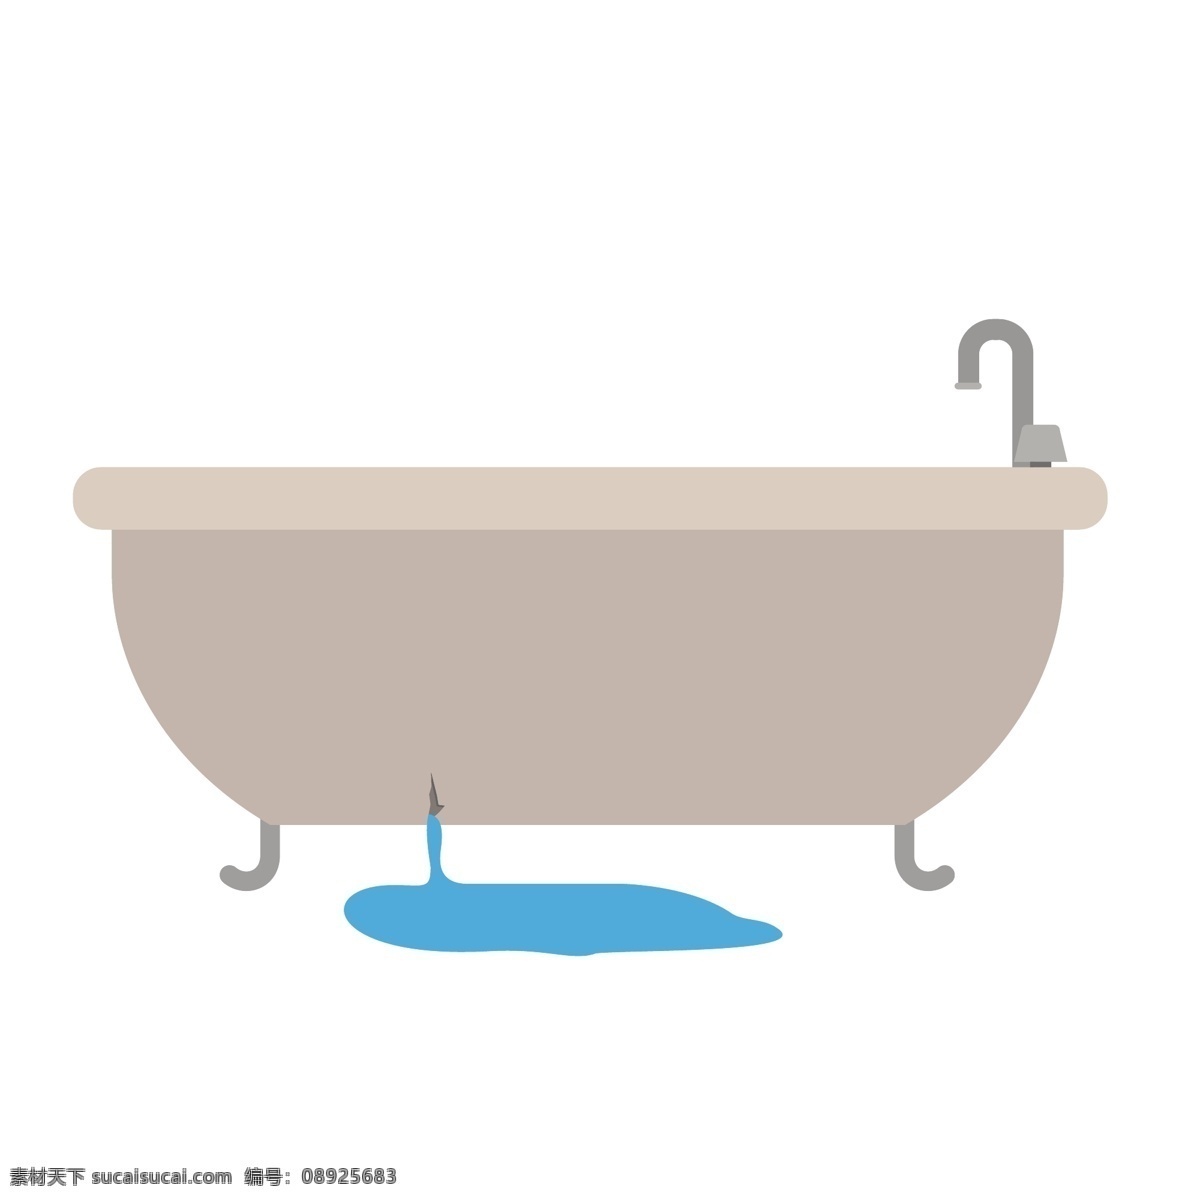 浴缸 漏水 矢量 浴缸漏水 漏水的 漏水的浴缸 卡通 卡通浴缸 浴缸破了 破了的浴缸 裂开